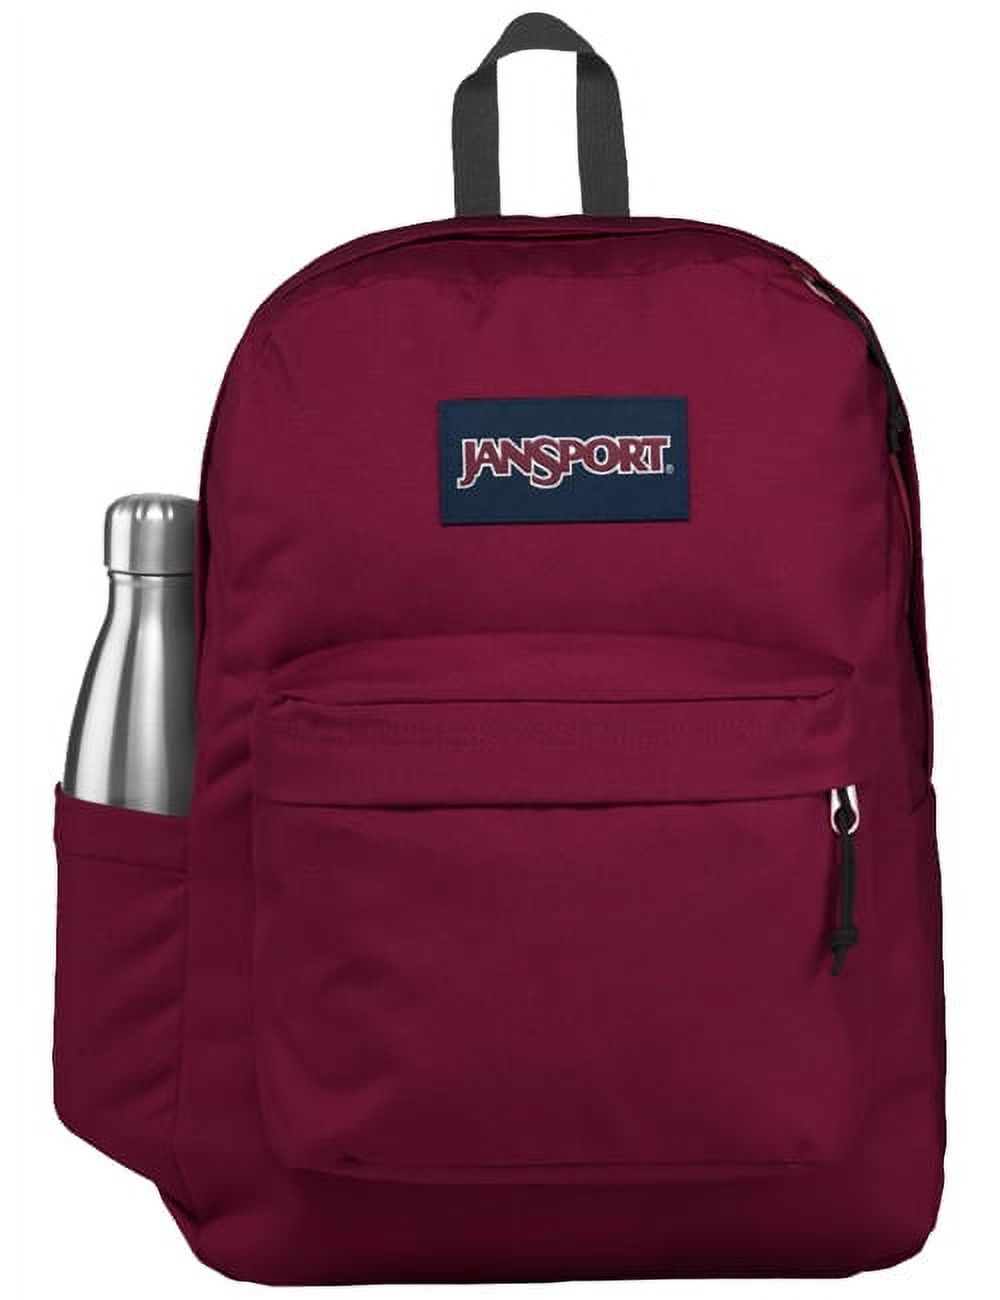 JanSport Unisex SuperBreak Backpack School Bag Russet Red - image 1 of 3